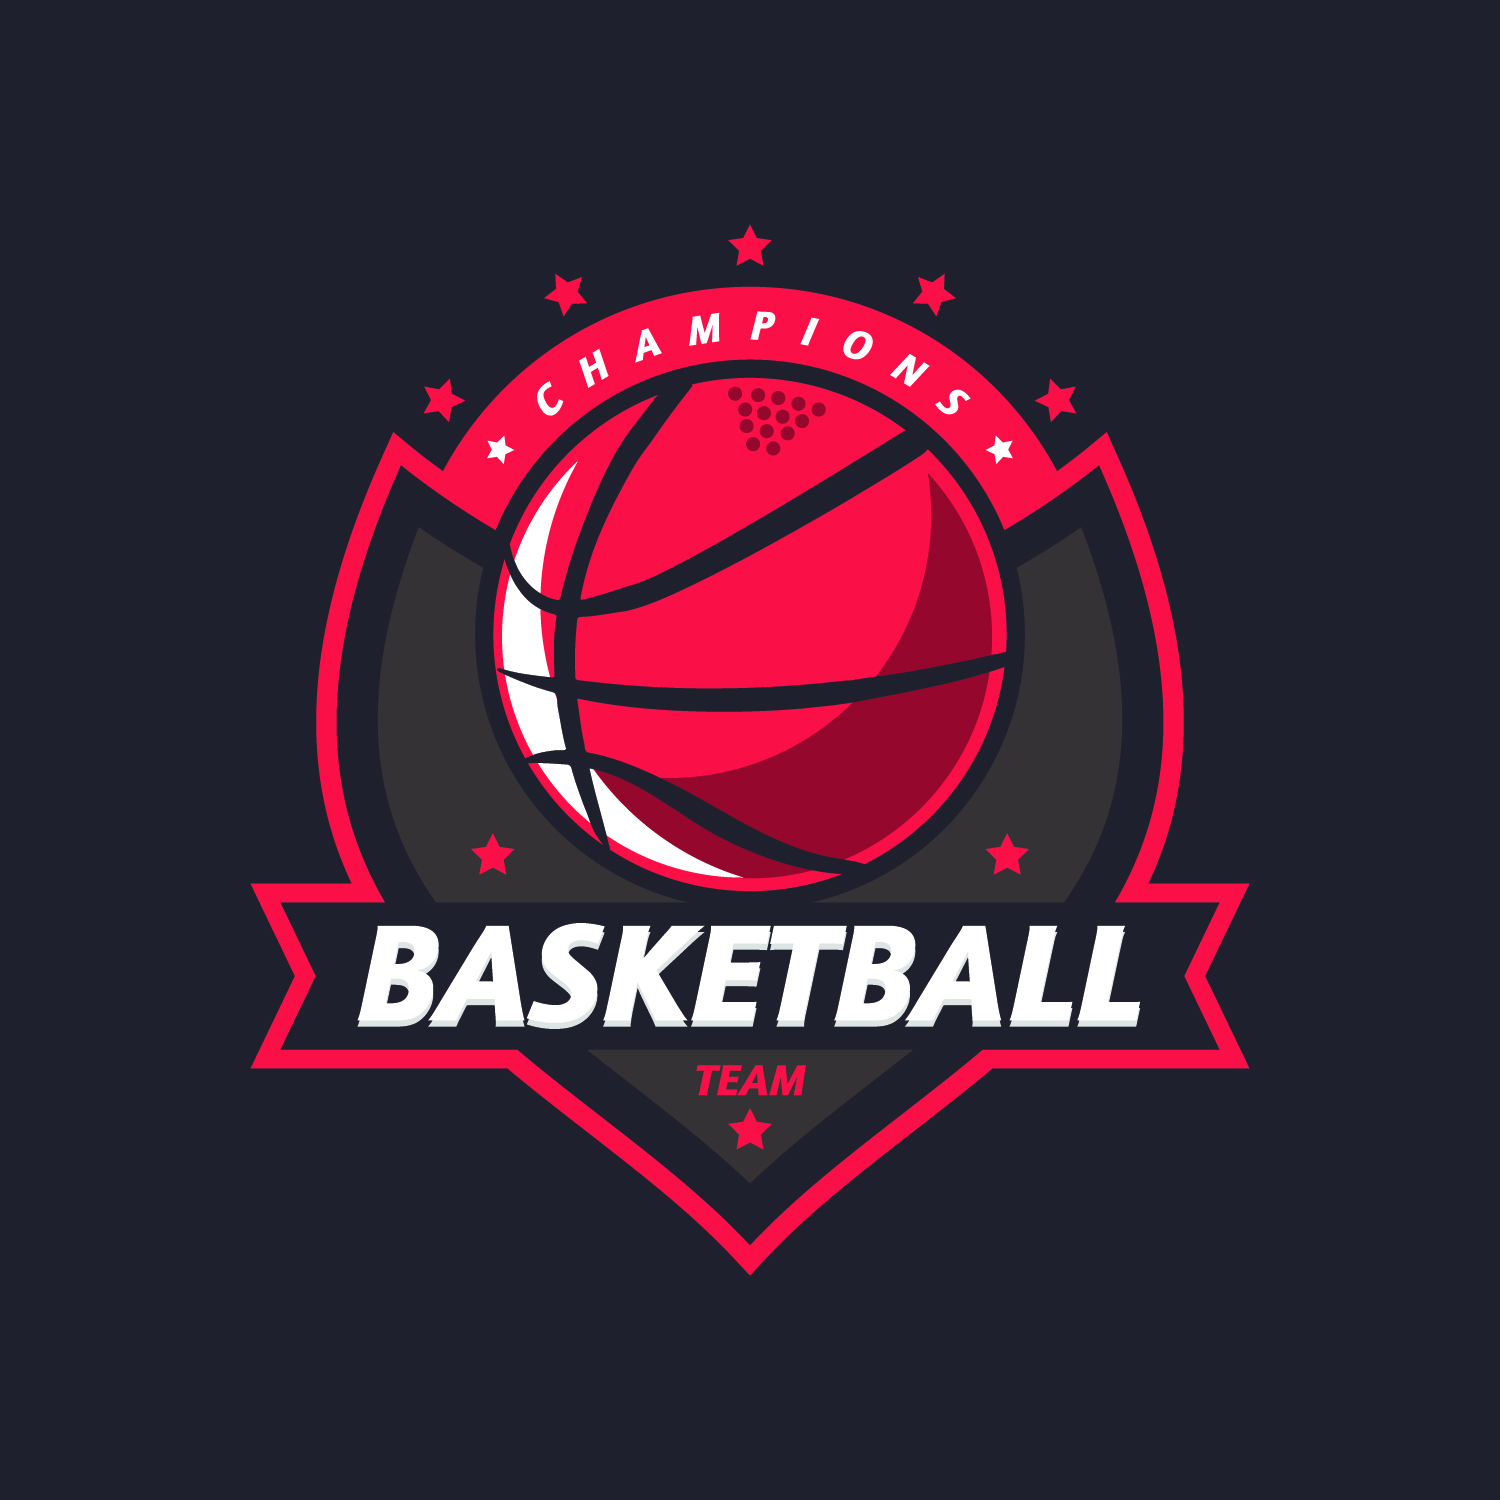 Дизайн логотипа баскетбола